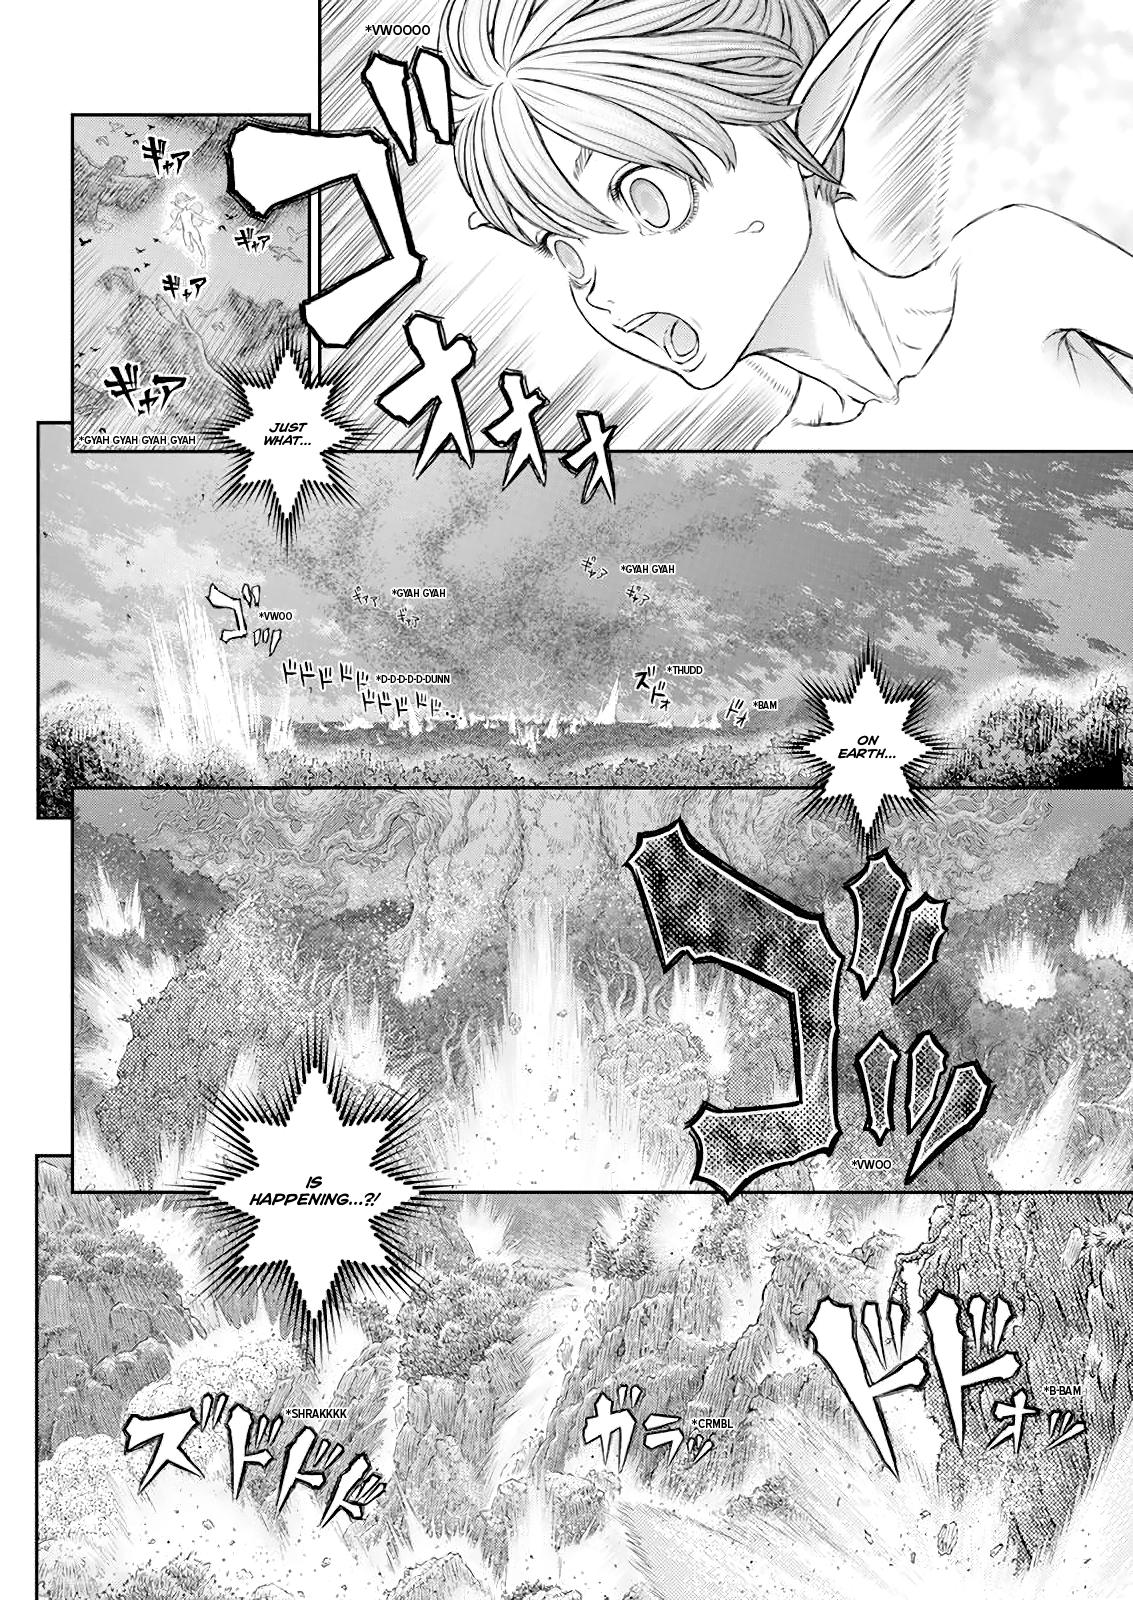 Berserk Manga Chapter 368 image 19